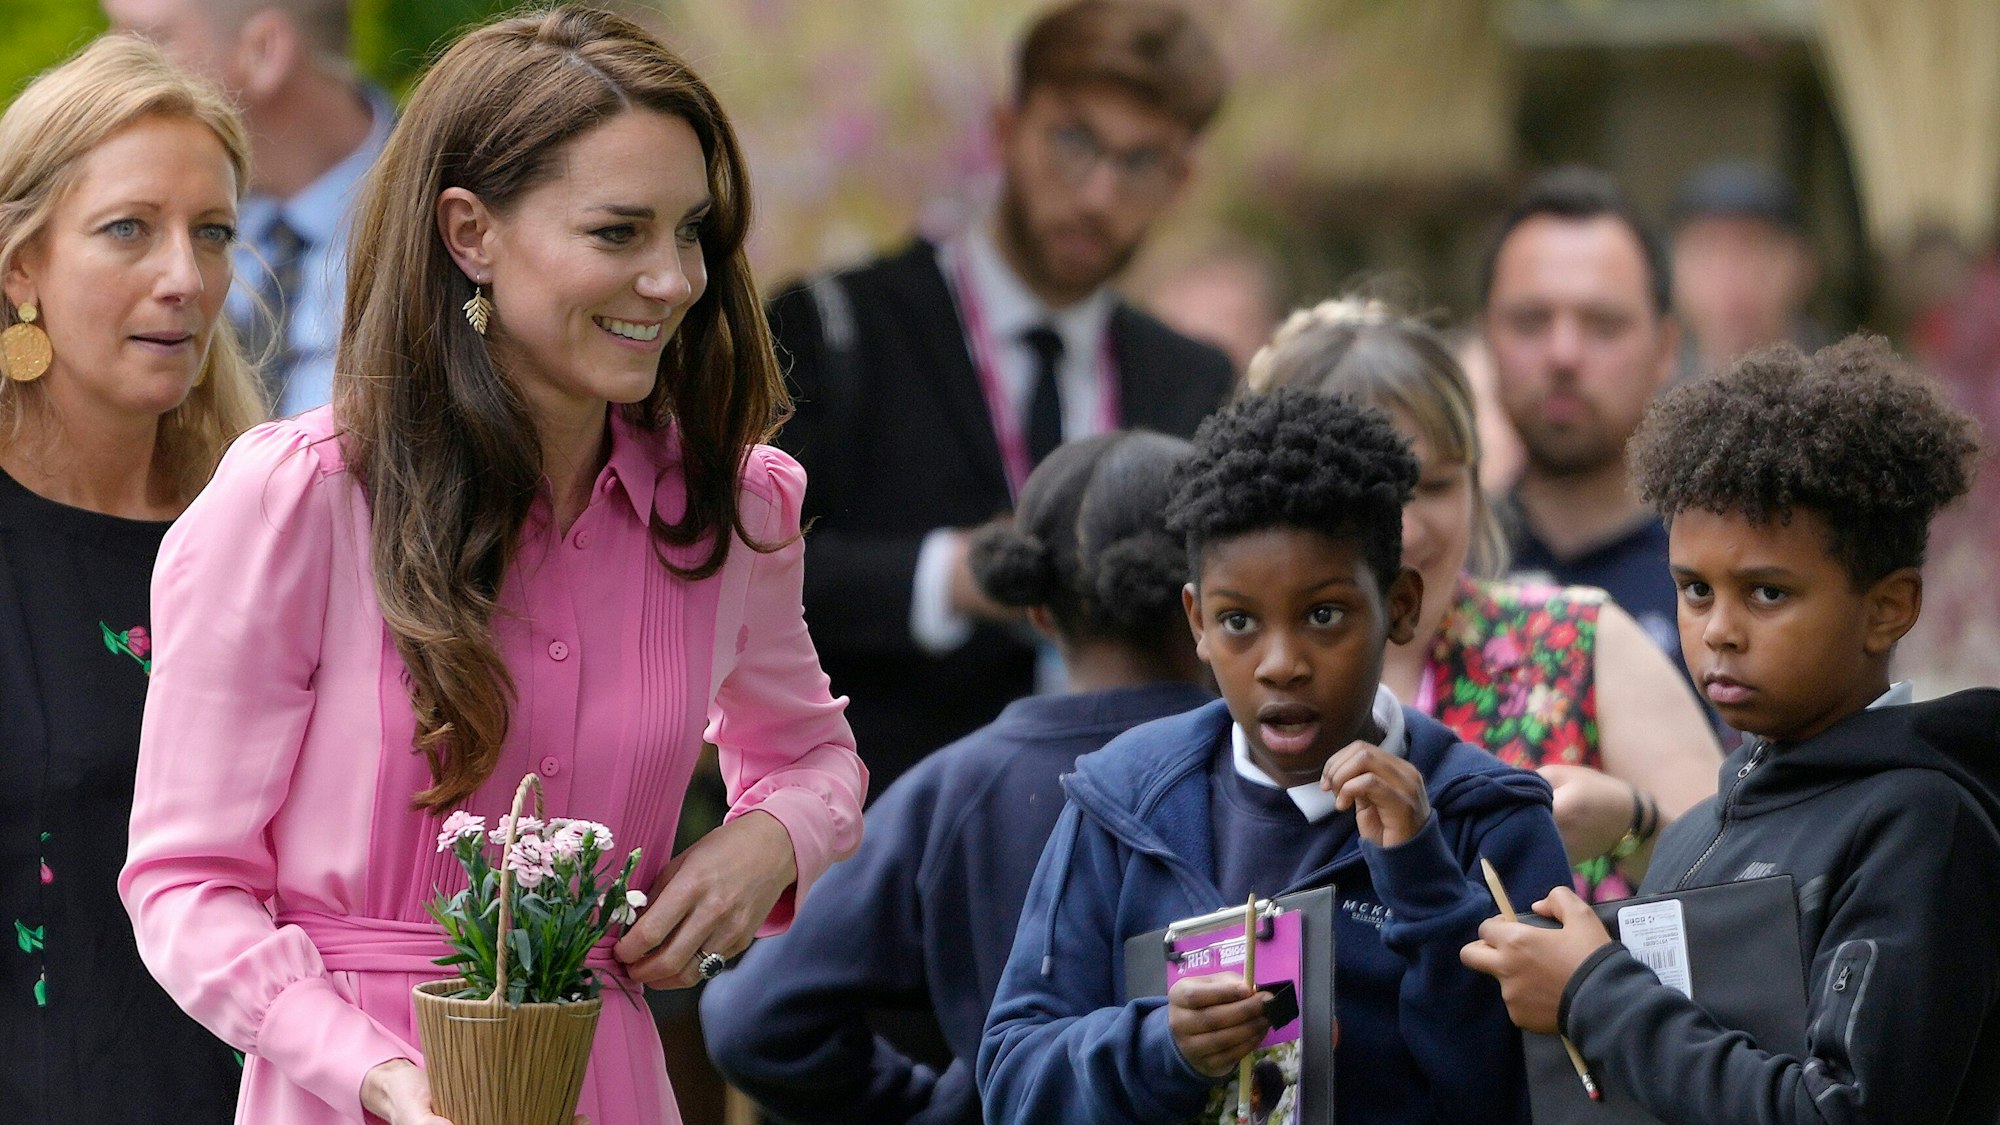 Die britische Prinzessin Kate, Prinzessin von Wales, nimmt an einem Picknick für Kinder teil.